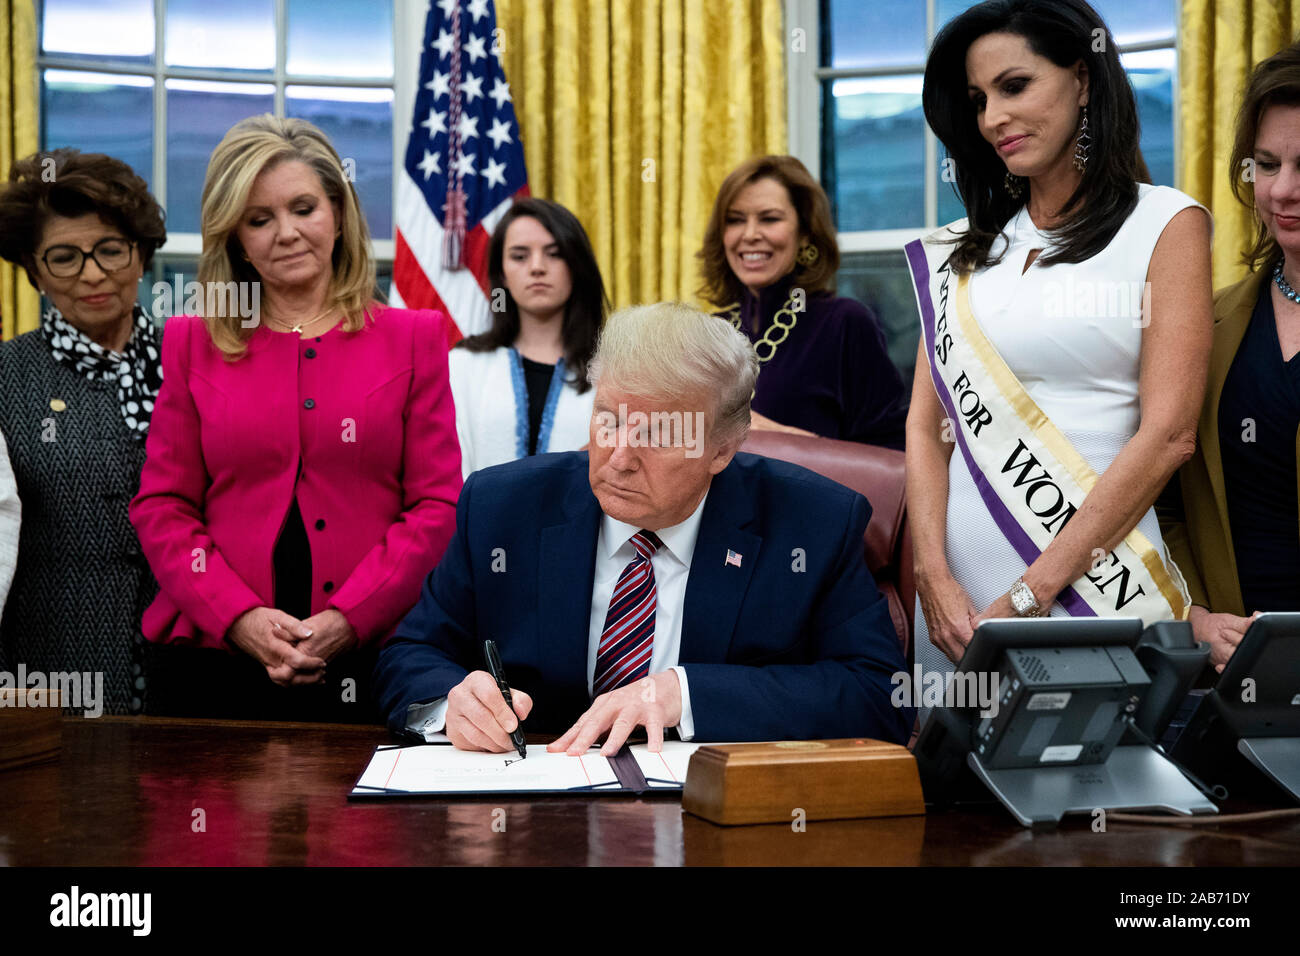 Il presidente statunitense Trump (C) segni " il suffragio femminile Centennial una moneta commemorativa atto", accanto al fianco degli Stati Uniti il senatore Marsha Blackburn (Repubblicano del Tennessee) (L), nell'Ufficio Ovale della Casa Bianca di Washington, DC, Stati Uniti d'America, 25 novembre 2019. Trump firmato "H.R. 2423, il suffragio femminile Centennial una moneta commemorativa atto " - un disegno di legge dirigere il Tesoro USA alla menta e rilascio fino al quattrocento mila one-dollar monete d'argento per onorare le donne che hanno giocato un ruolo nella raccolta di supporto per il XIX emendamento.Credit: Michael Reynolds/Piscina via CNP /MediaPunch Foto Stock